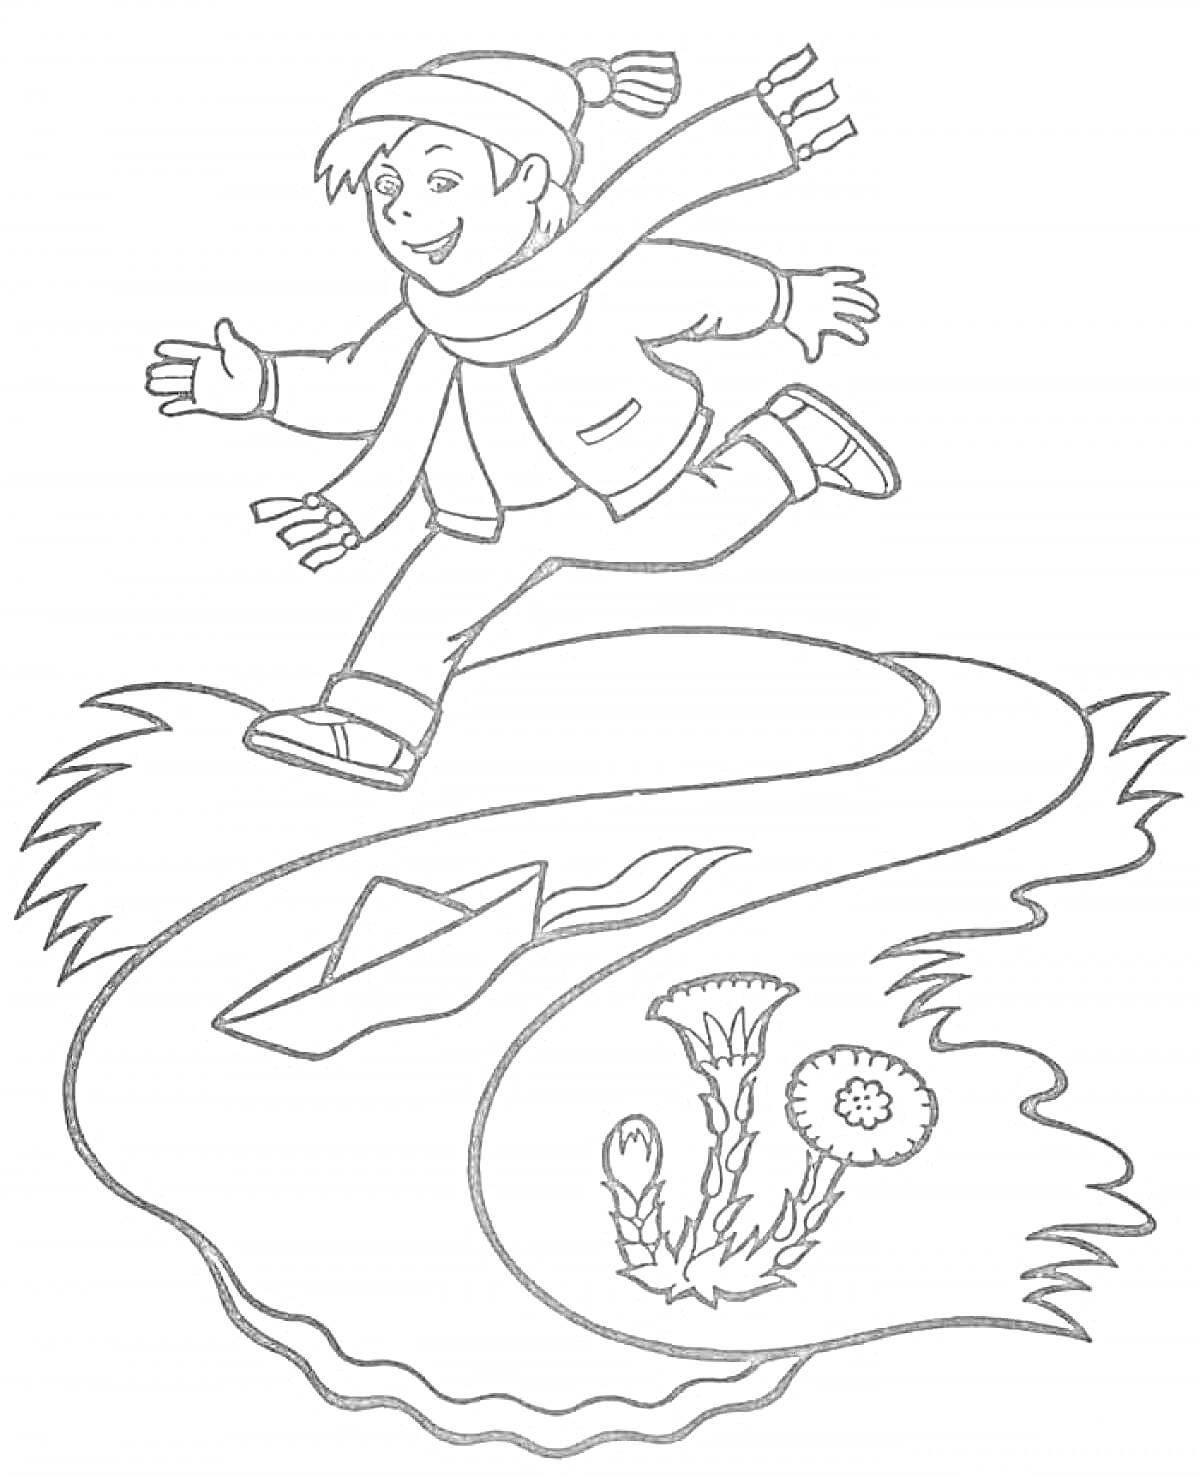 Мальчик в теплой одежде бежит вдоль ручья с бумажным корабликом, рядом с которым растет одуванчик